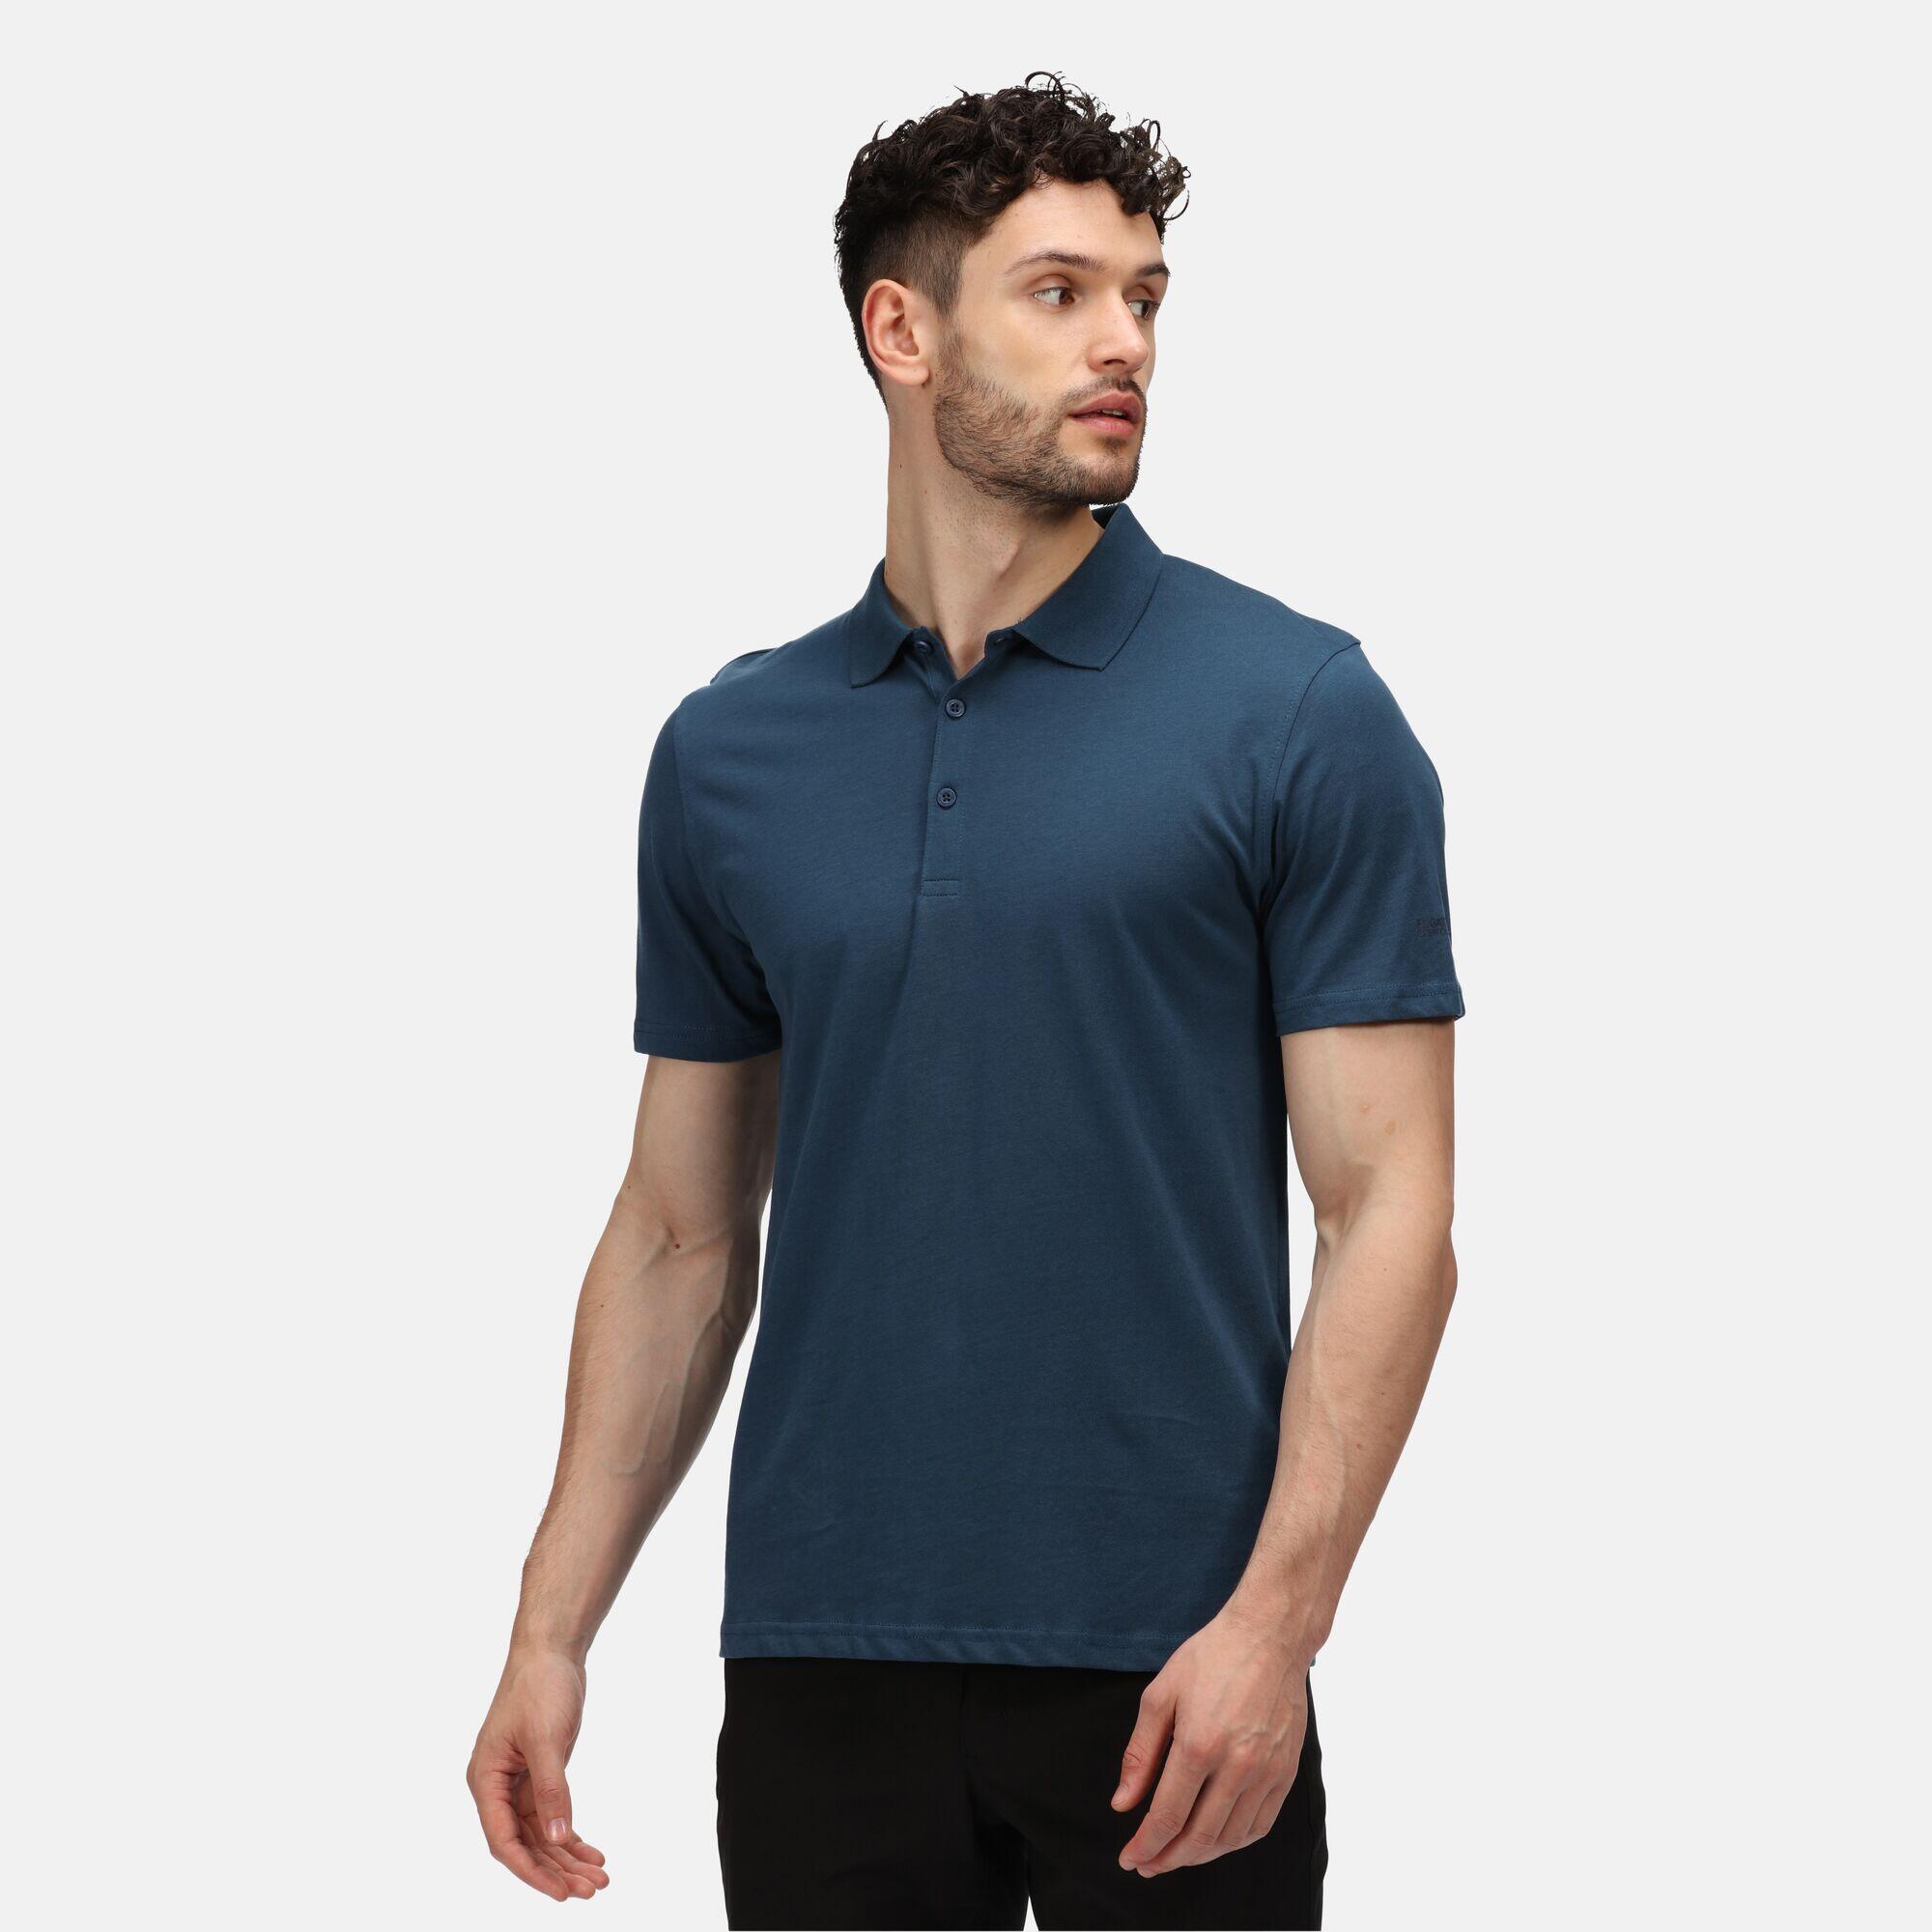 REGATTA Sinton Men's Fitness Short Sleeve Polo Shirt - Moonlight Denim